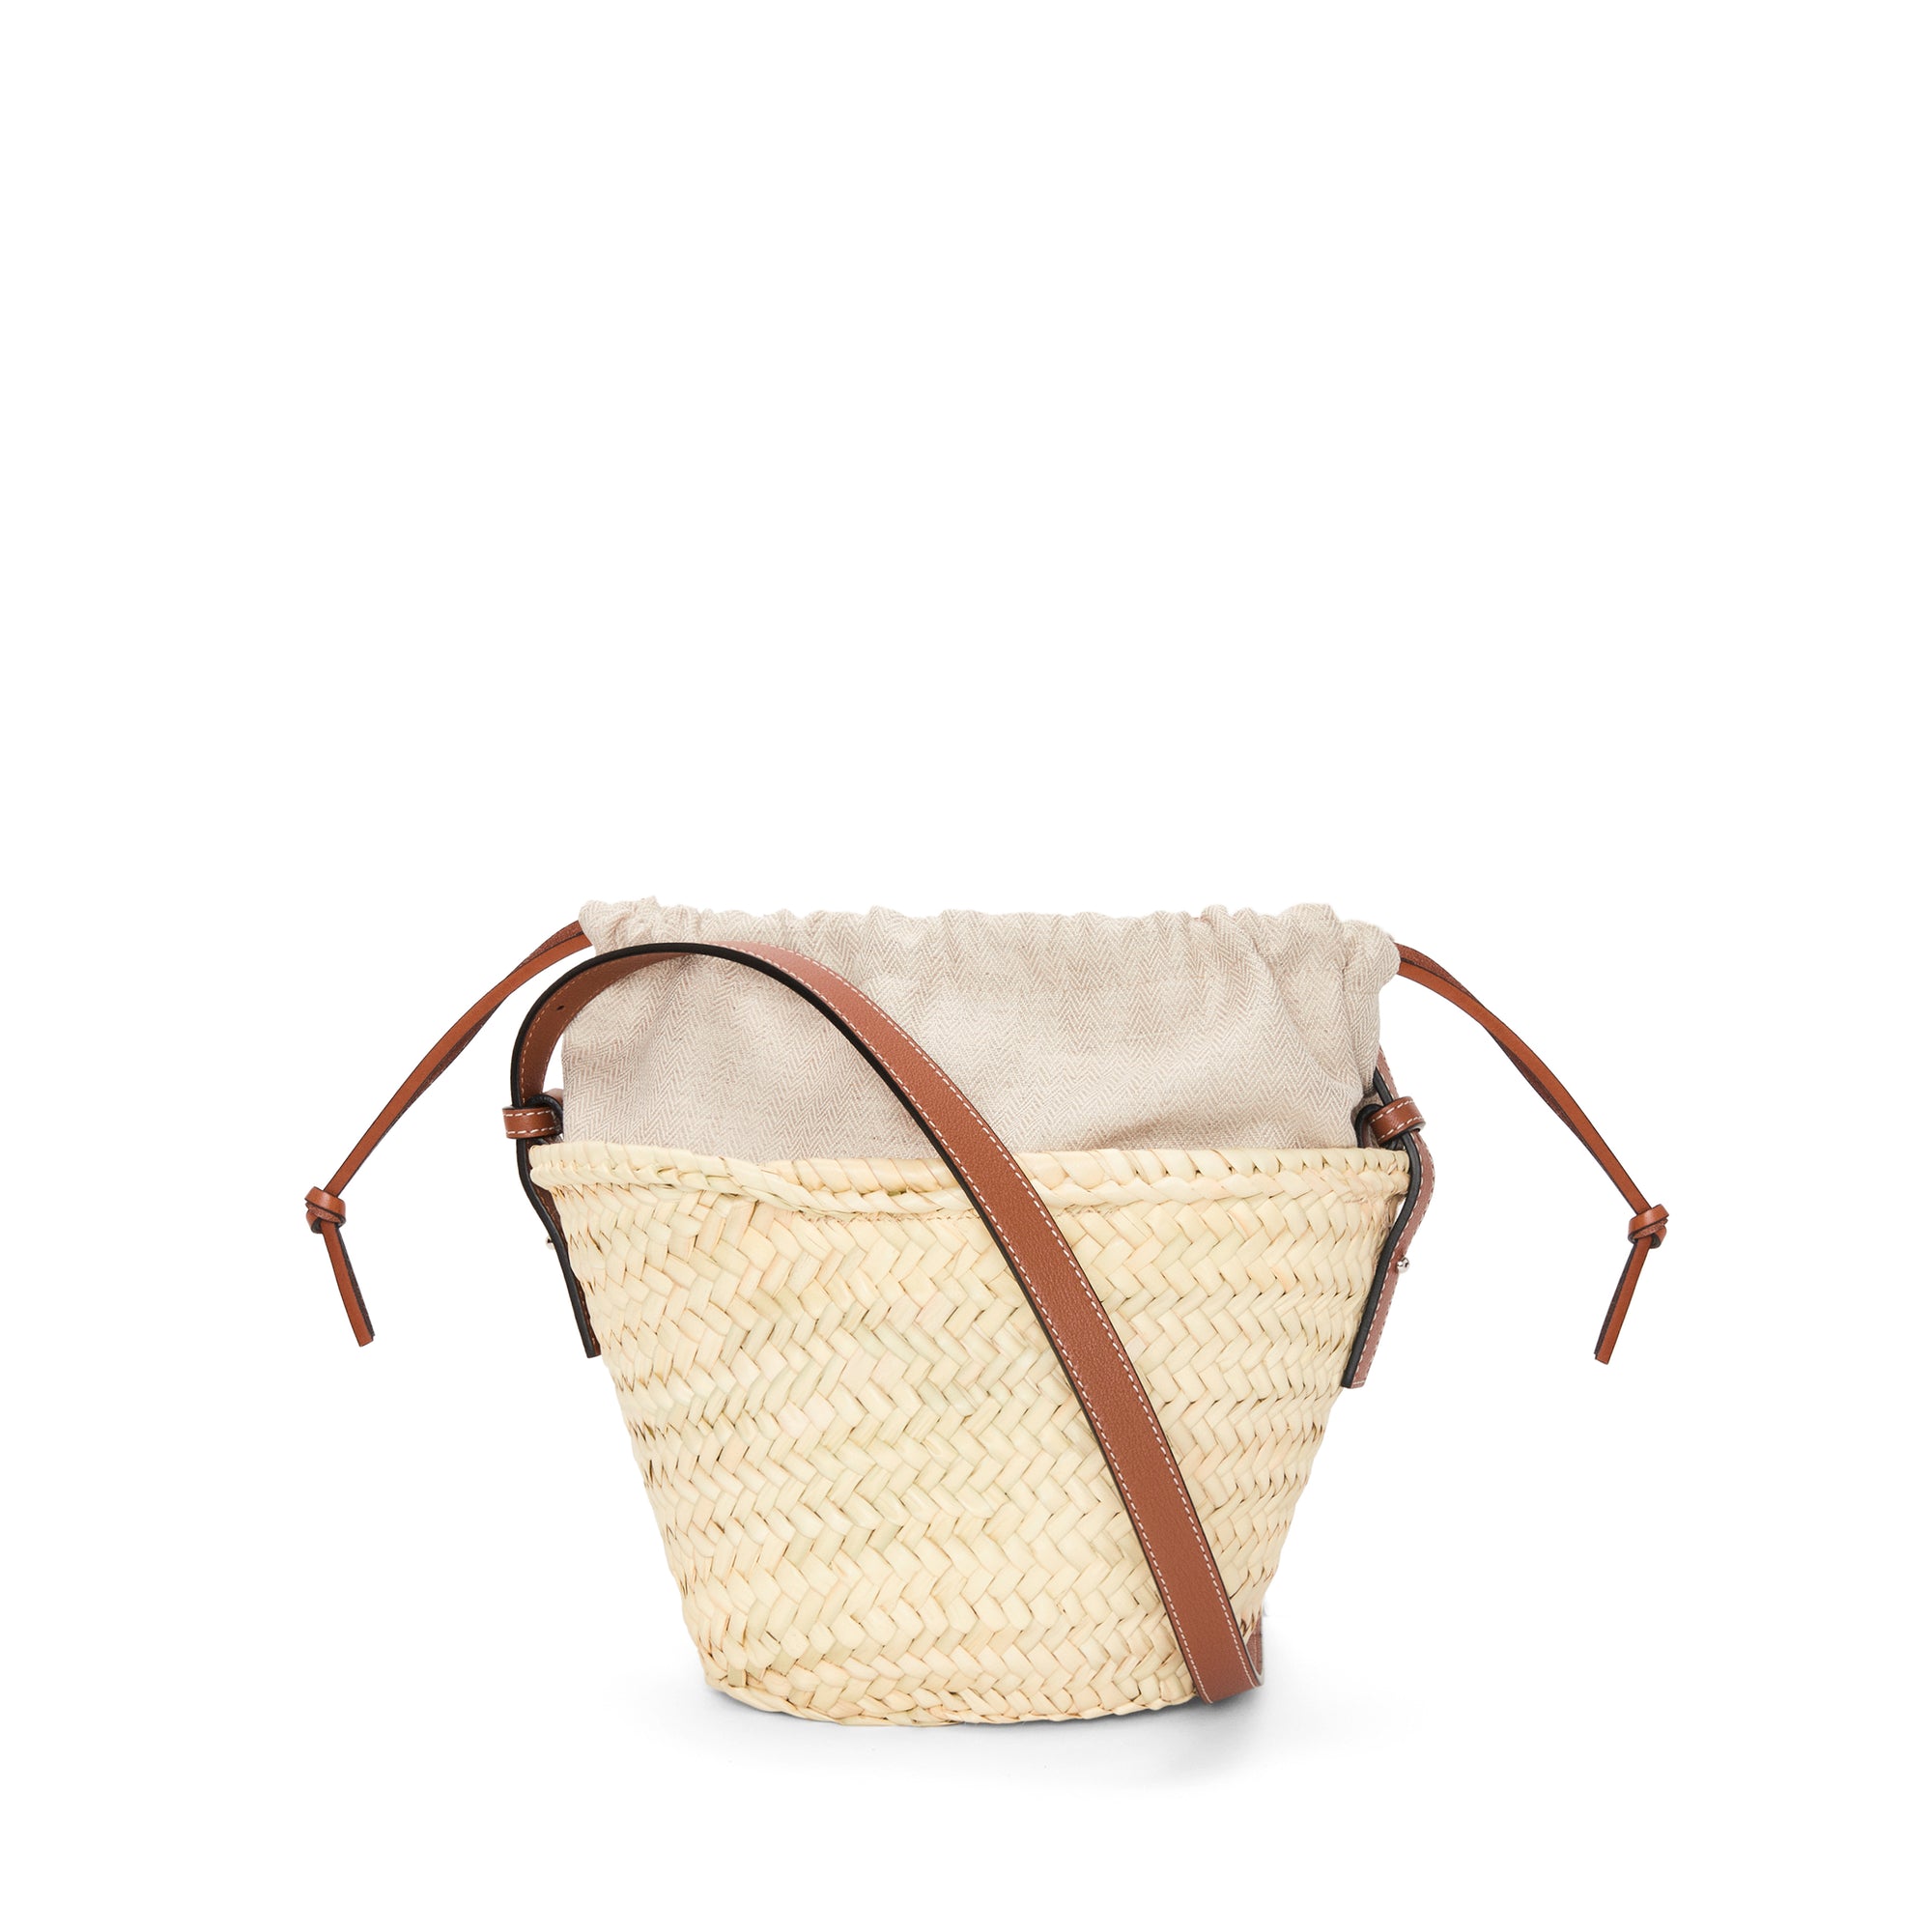 Loewe - Women’s Drawstring Bucket Bag - (Natural/Tan) view 4